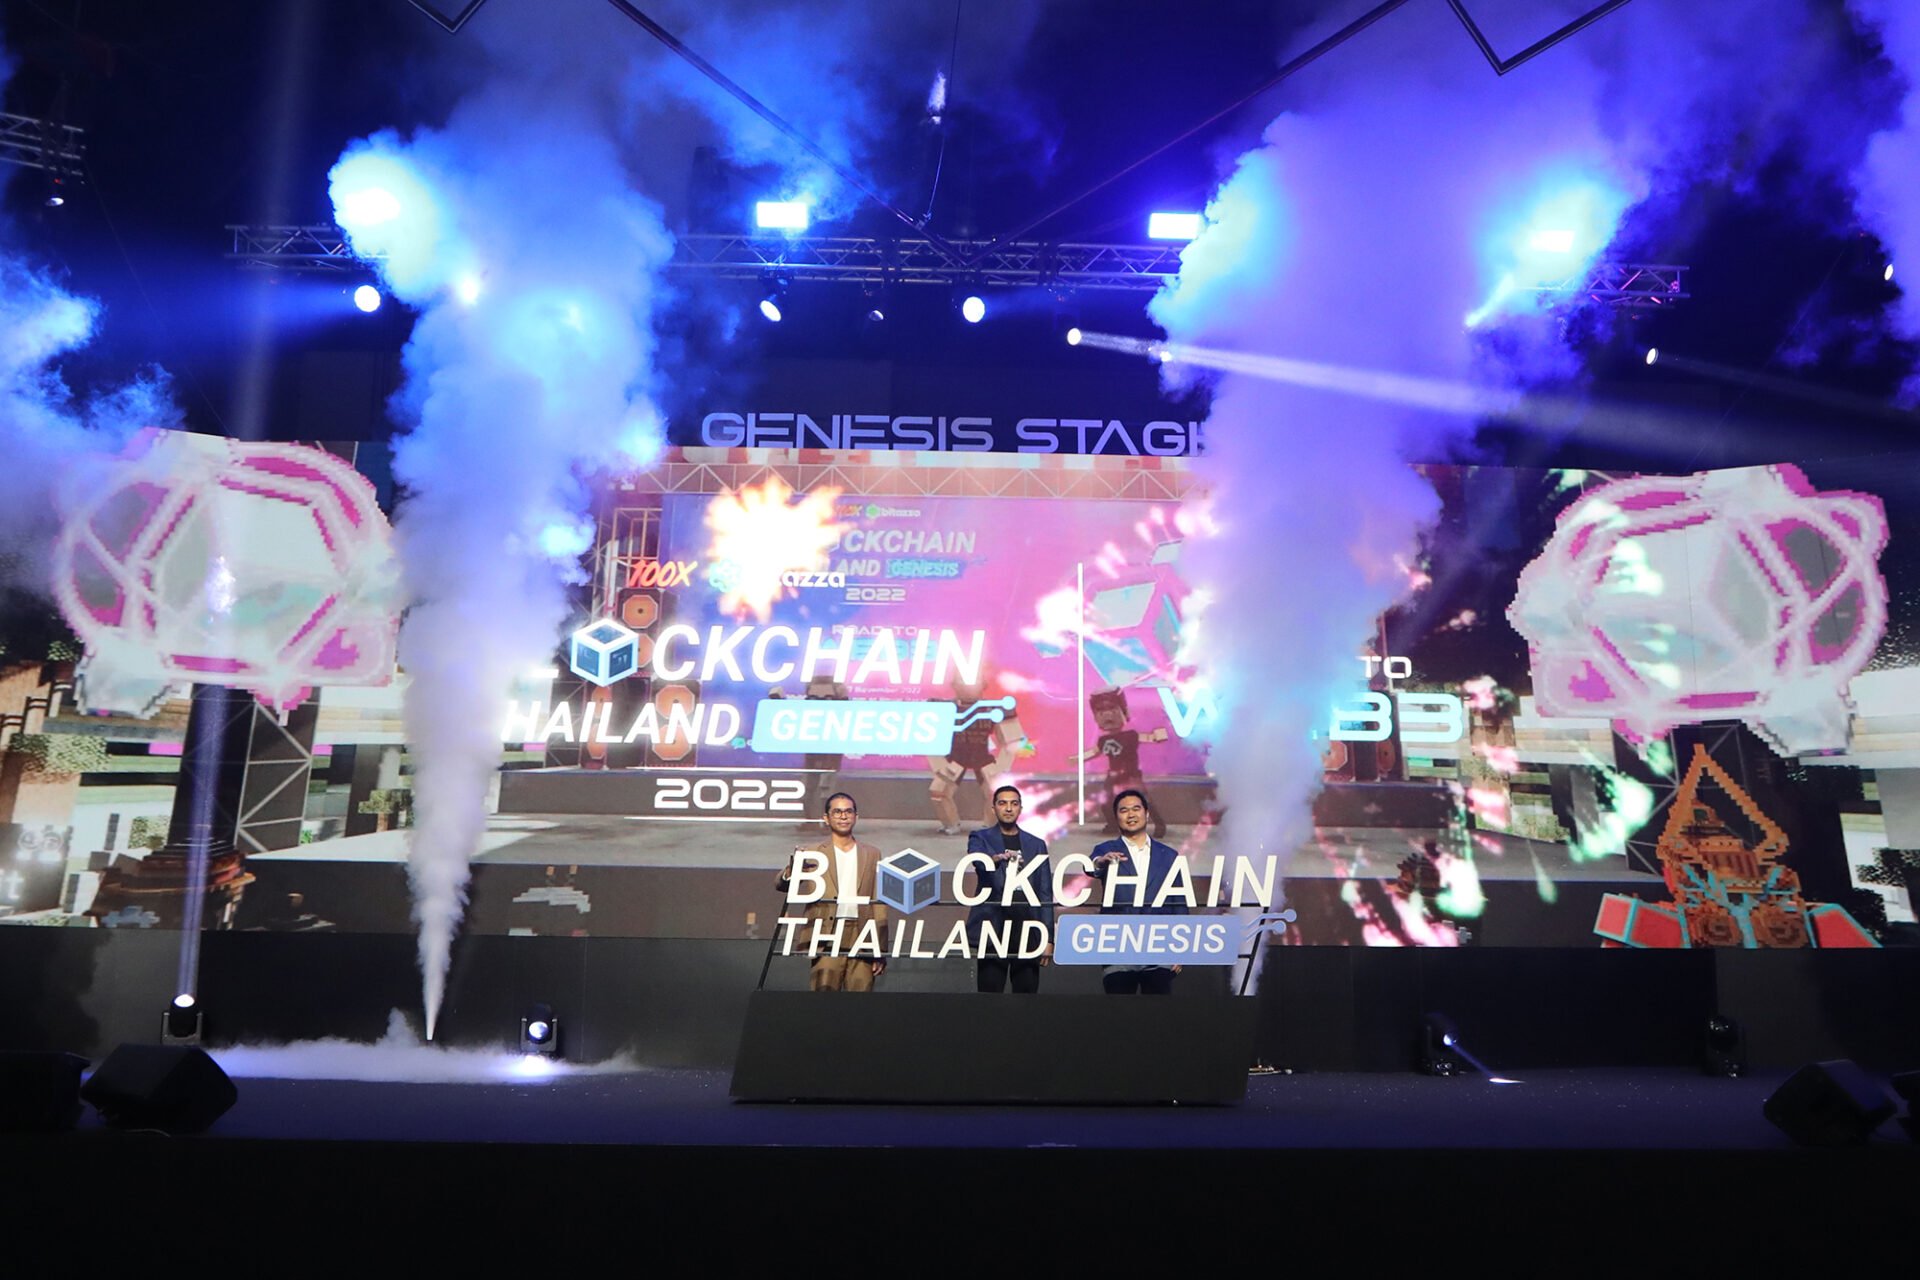 “Blockchain Thailand Genesis 2022 : Road to Web3” งานบล็อกเชนที่ยิ่งใหญ่ที่สุดของไทย